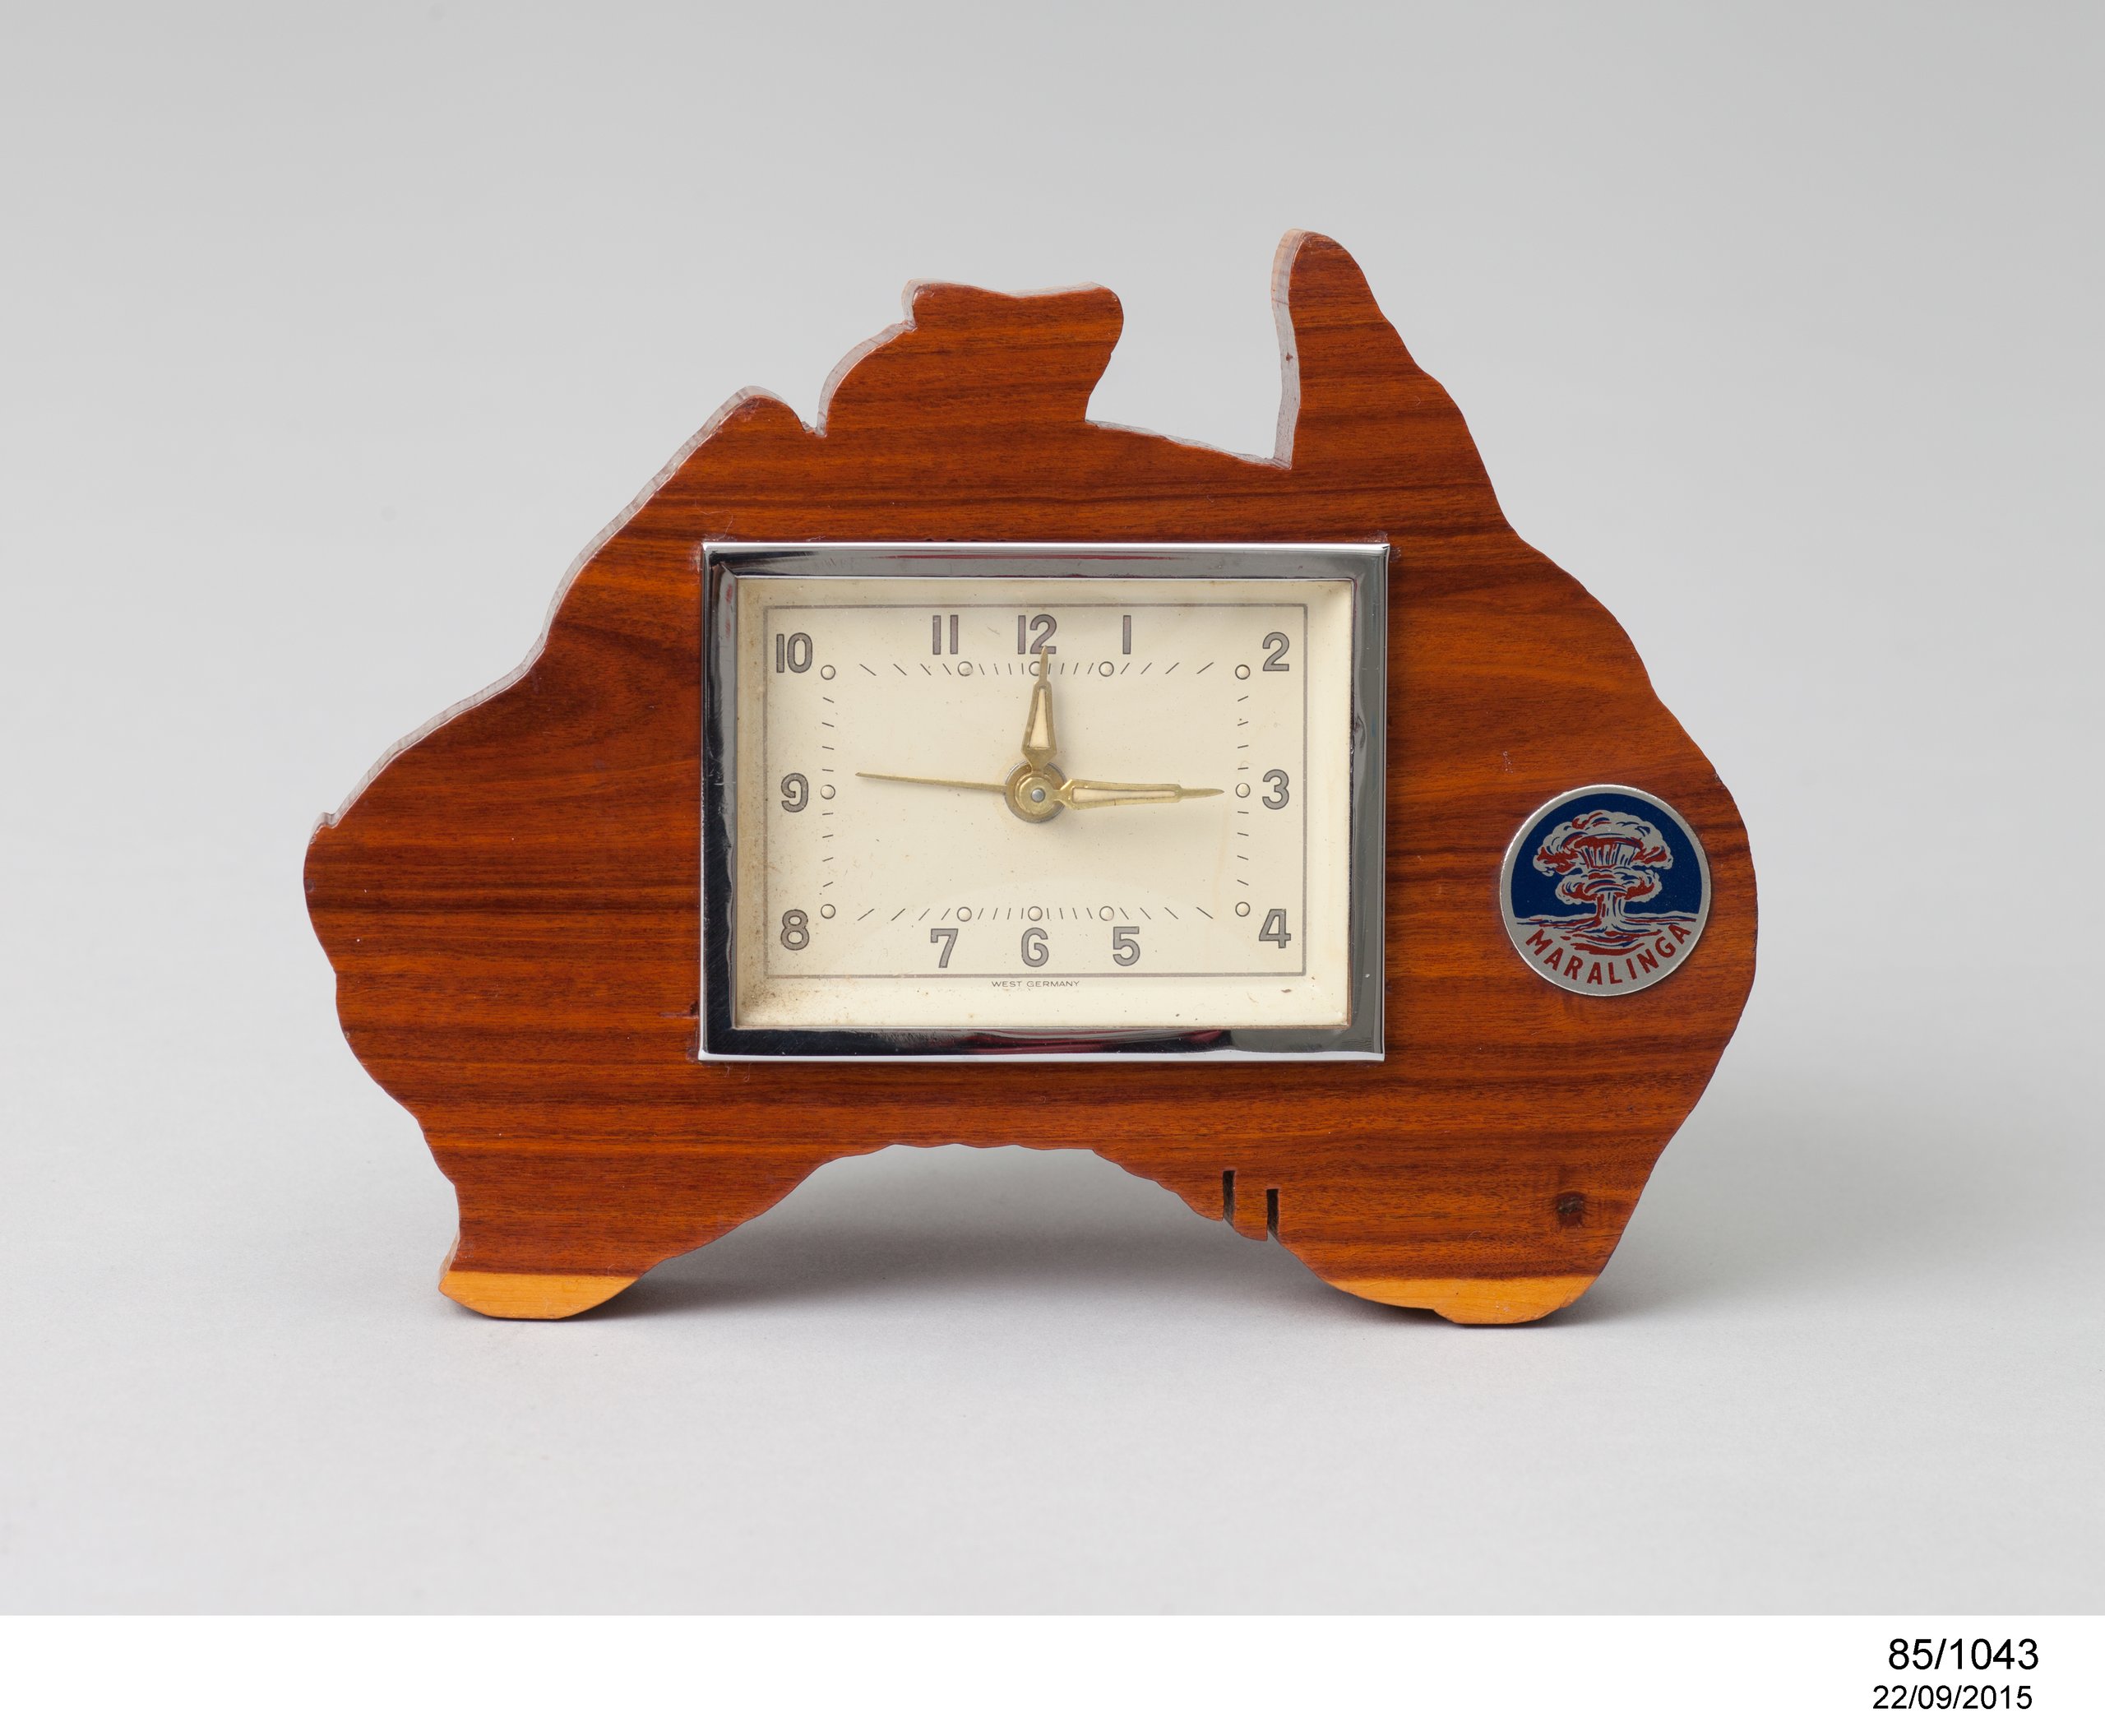 Maralinga souvenir clock